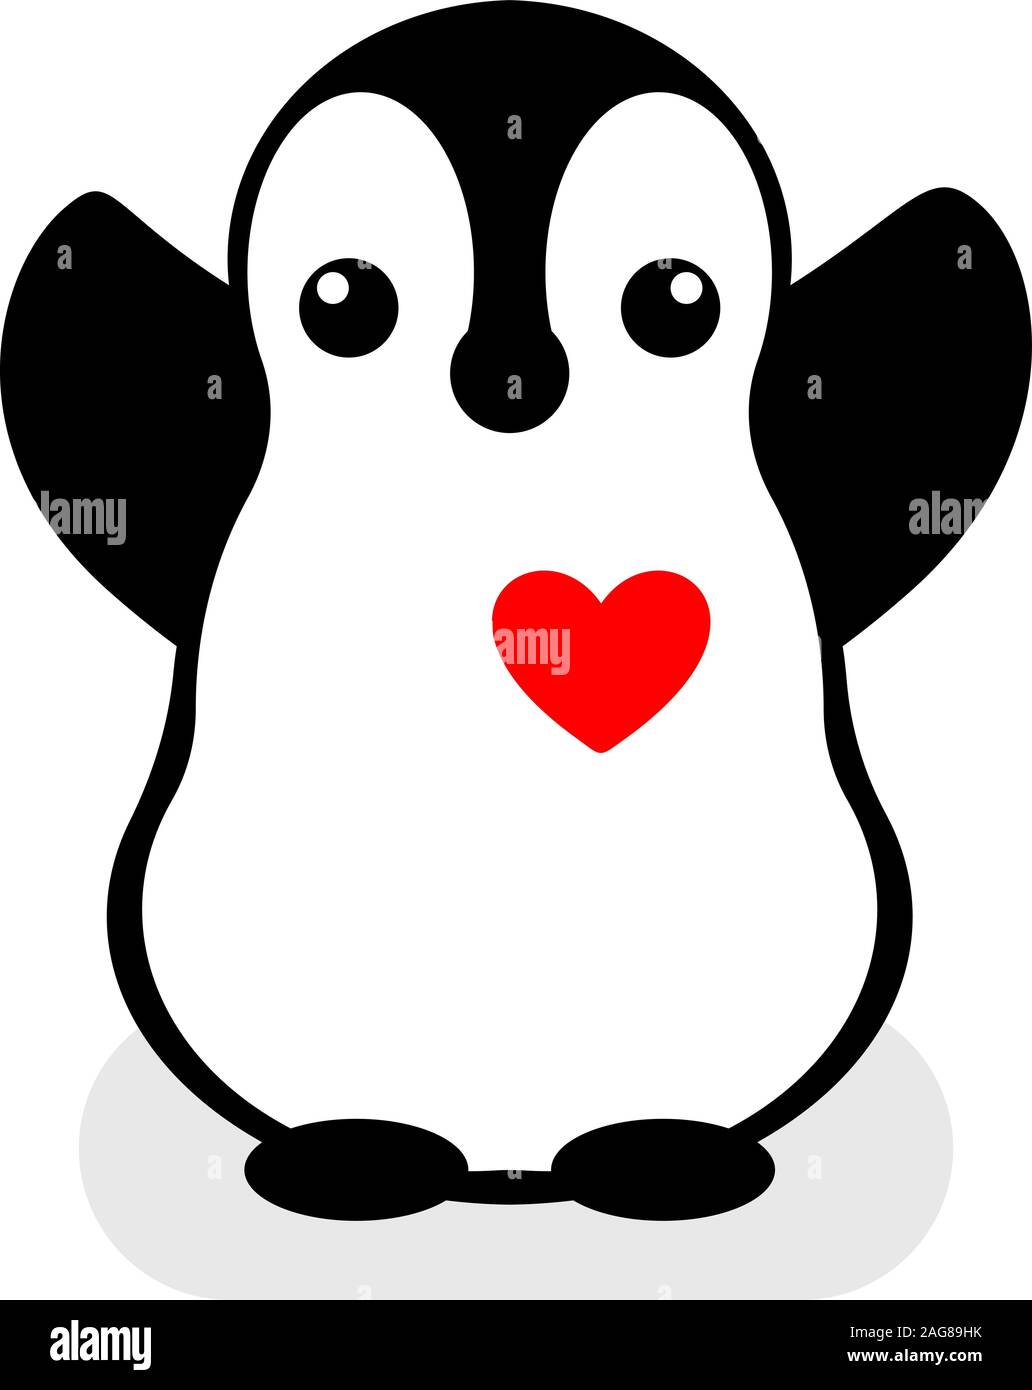 Vettore isolato logo del pinguino. Icona di animale. Illustrazione del fumetto. Segno d'inverno. In bianco e nero. Immagine grafica. Illustrazione Vettoriale